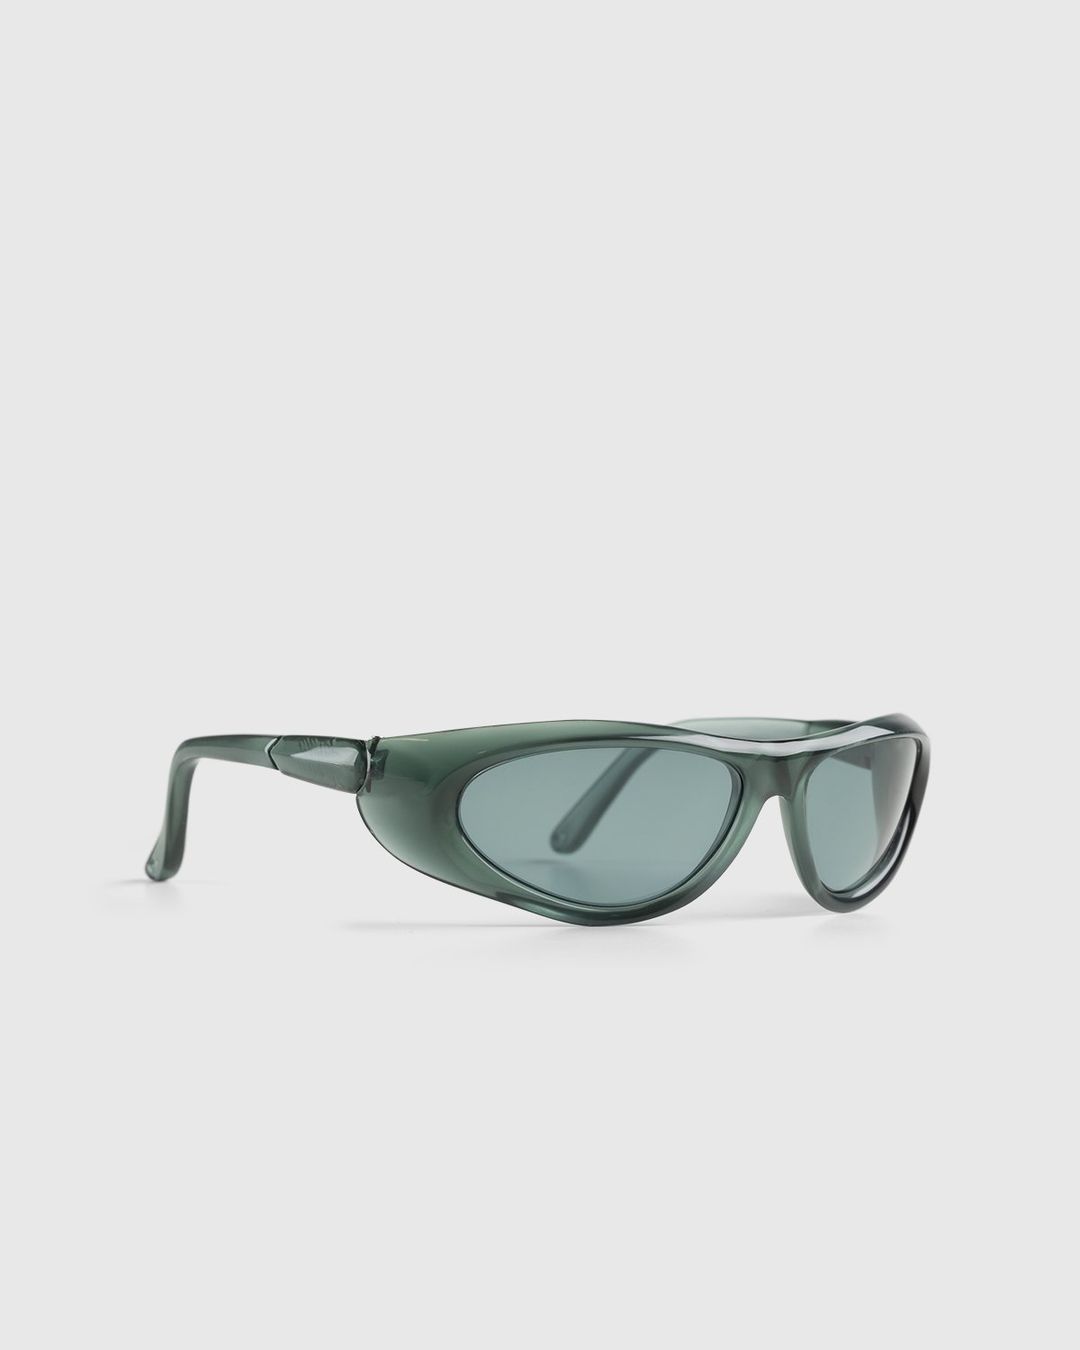 Tobias Spichtig x Highsnobiety – Sunglasses Green | Highsnobiety Shop